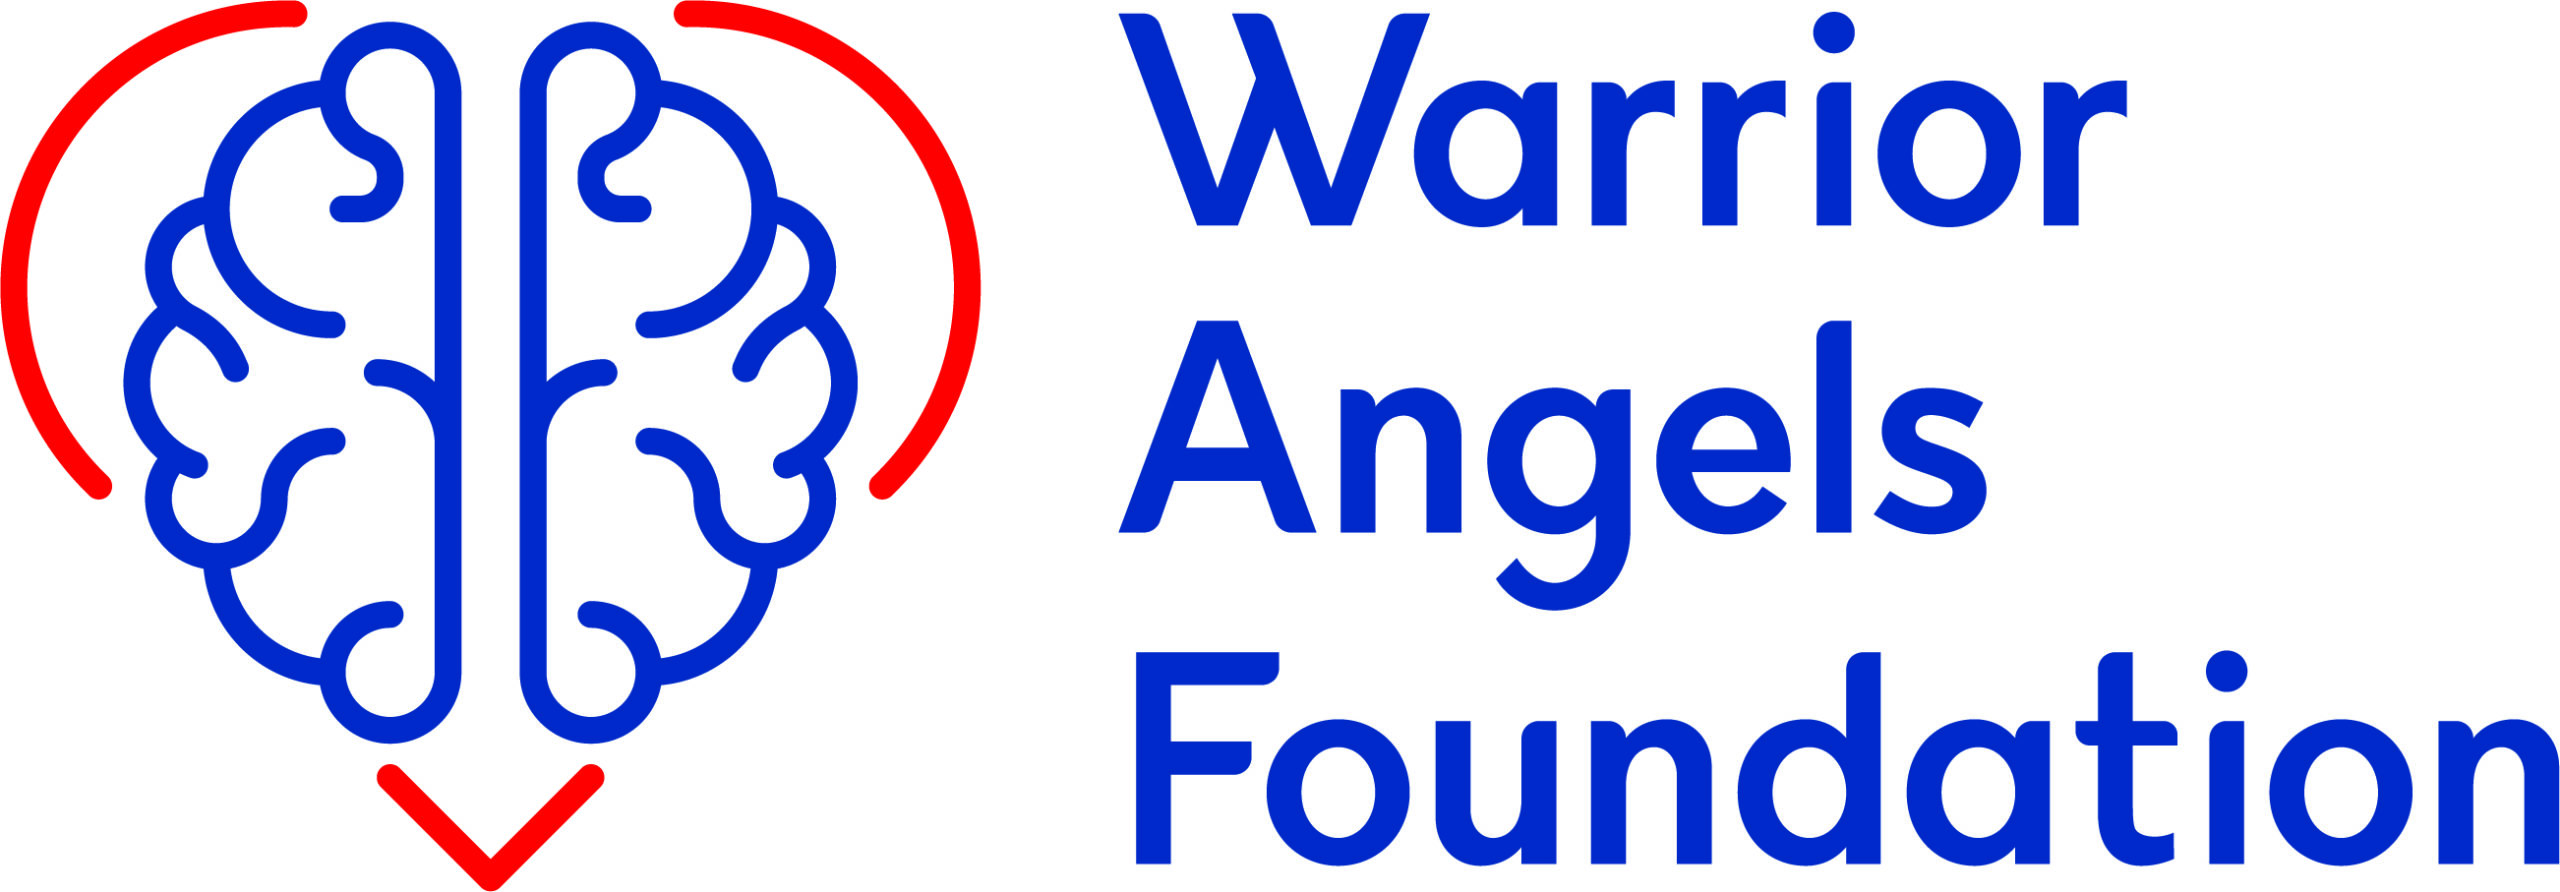 Warrior Angels Foundation